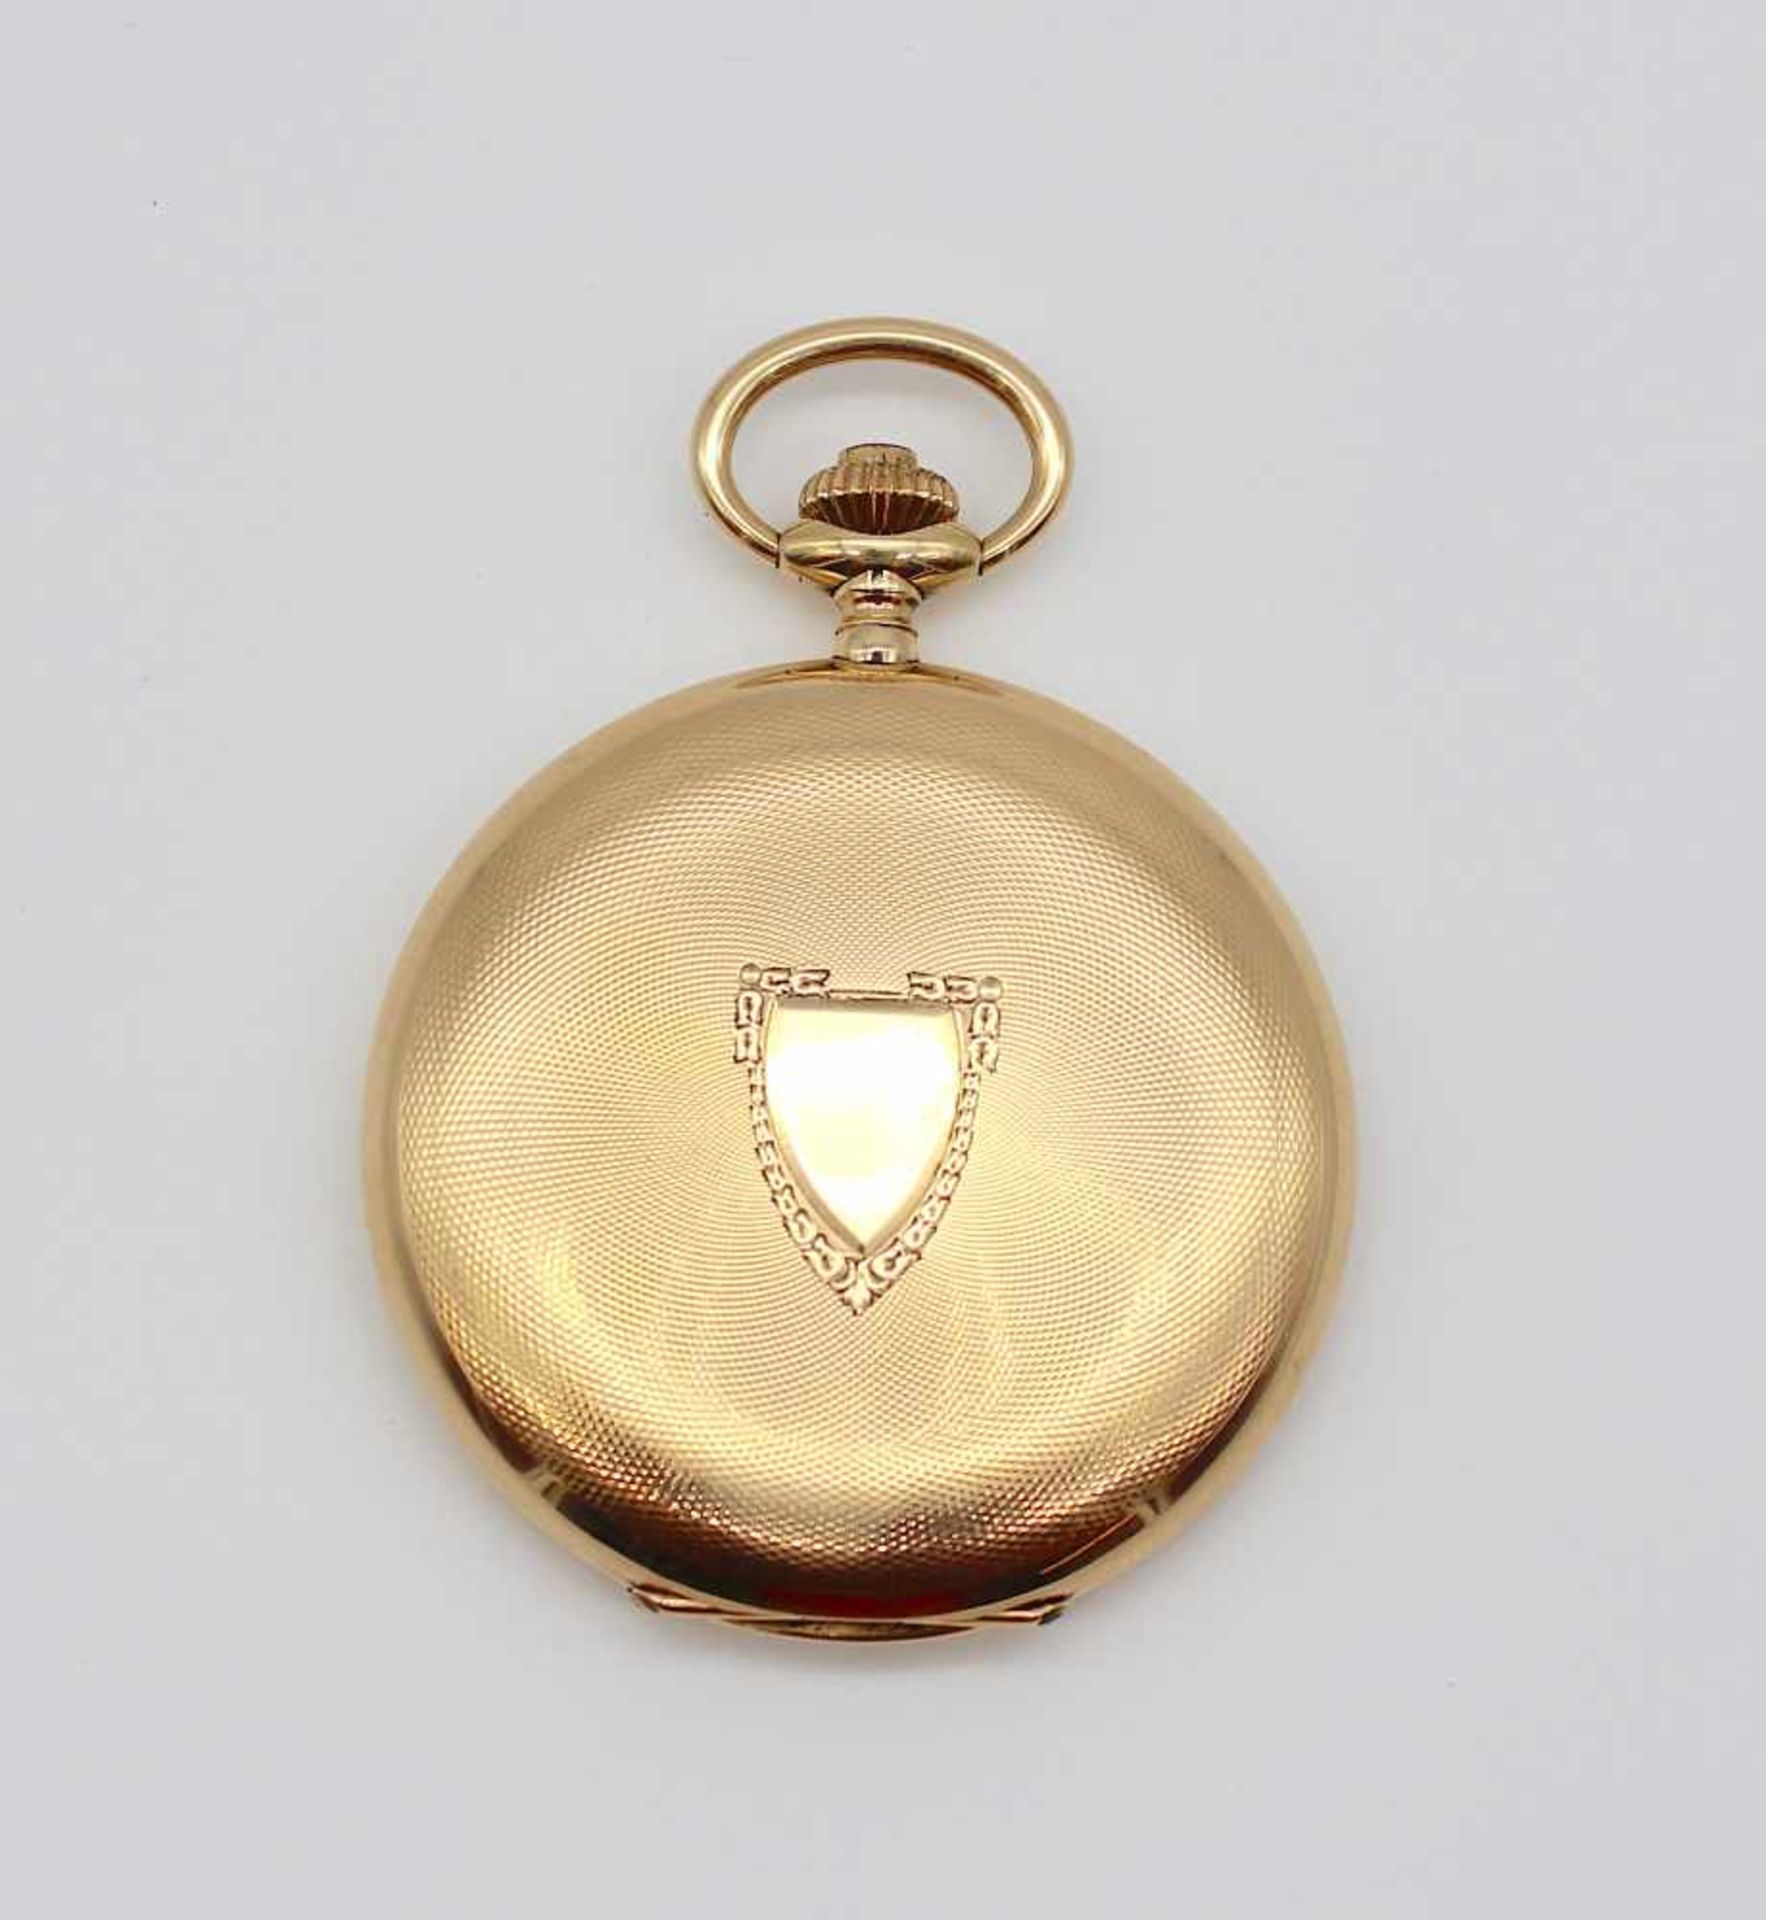 CH.F. Tissot & Fils LocleTaschenuhr in 585er Gold gearbeitet. Gewicht ca. 104 g, Durchmesser ca. - Bild 3 aus 3